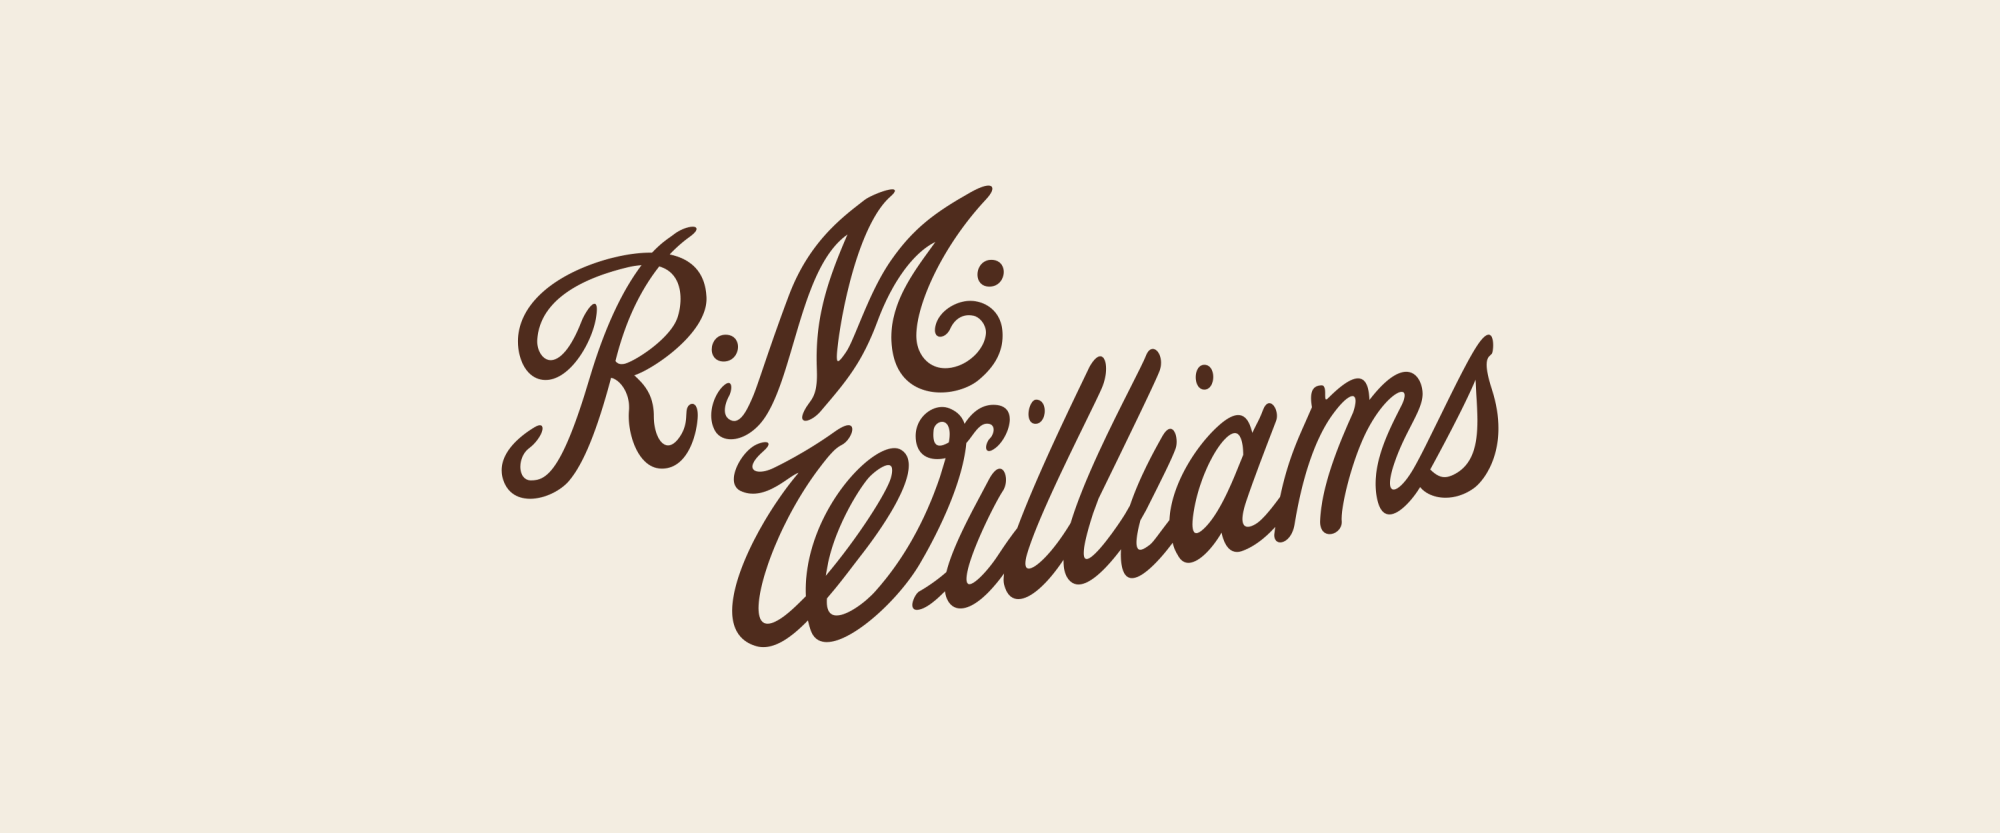 Reginald Murray (RM) Williams AO, CMG